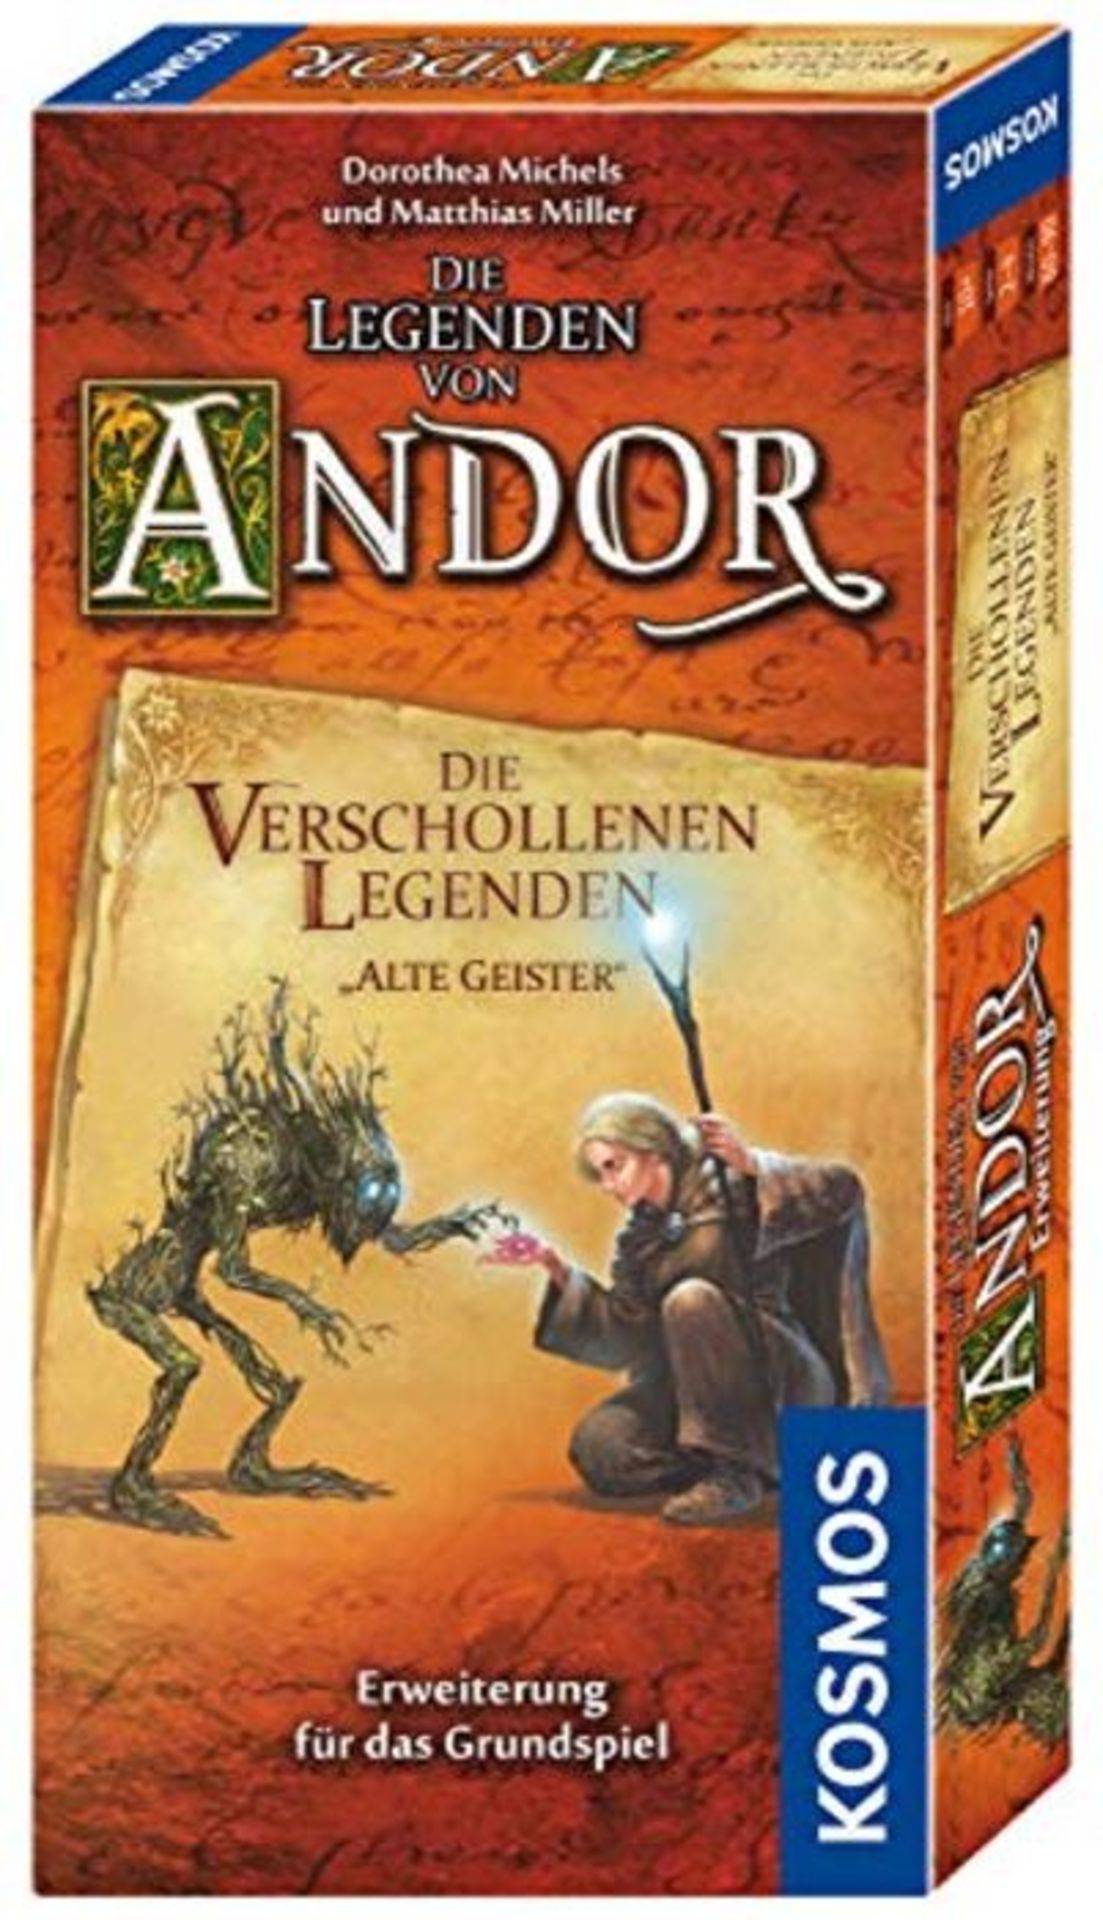 Andor - Die verschollenen Legenden: Alte Geister. Erweiterung für das Grundspiel